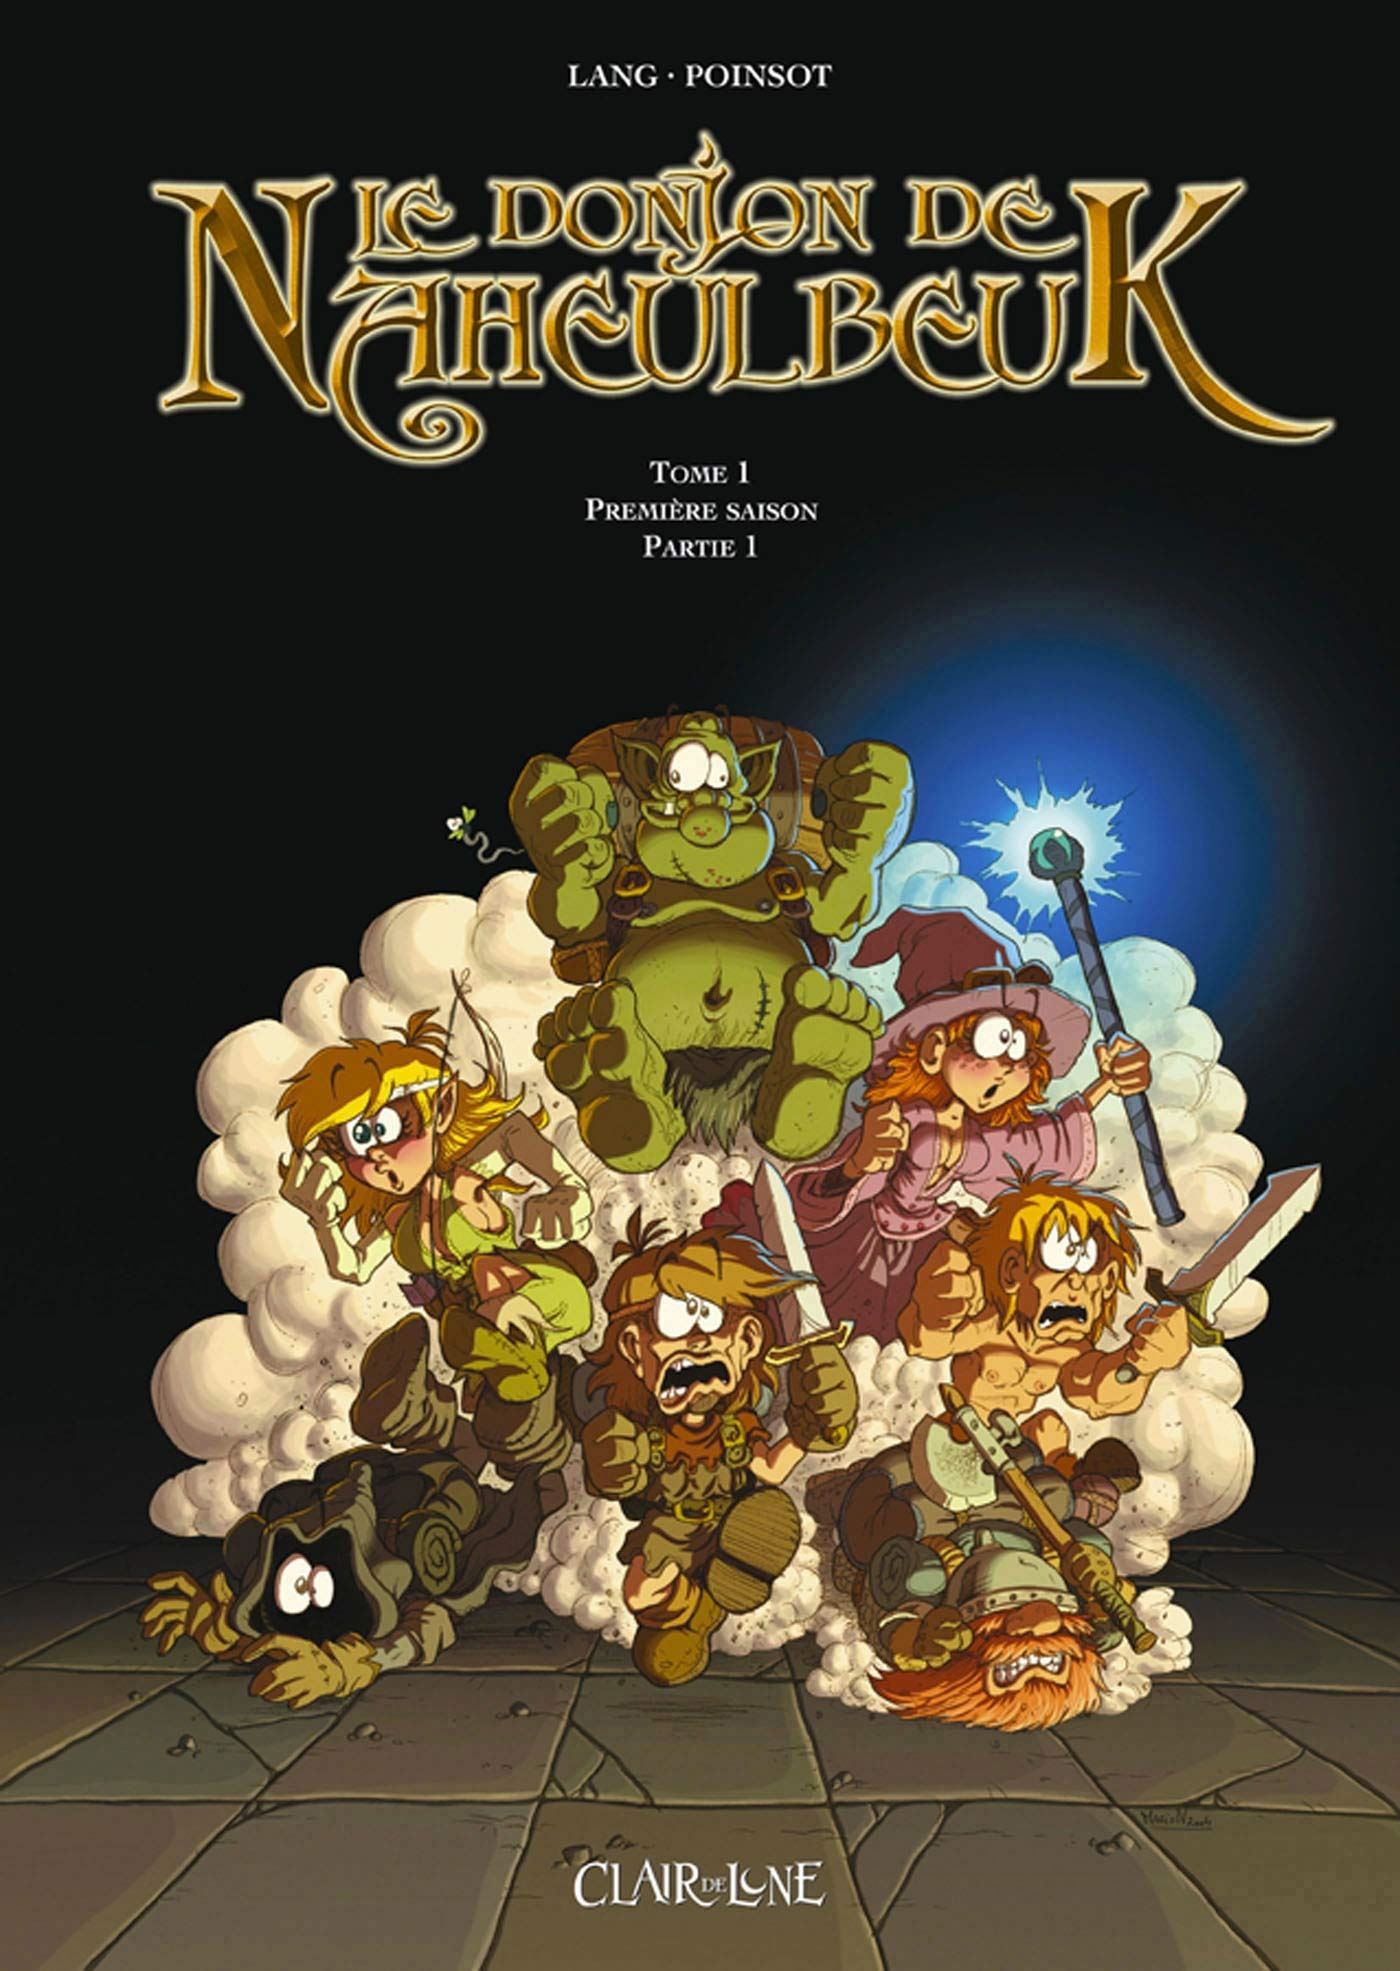 Le Donjon de Naheulbeuk, Première saison, première partie 1, tome 1